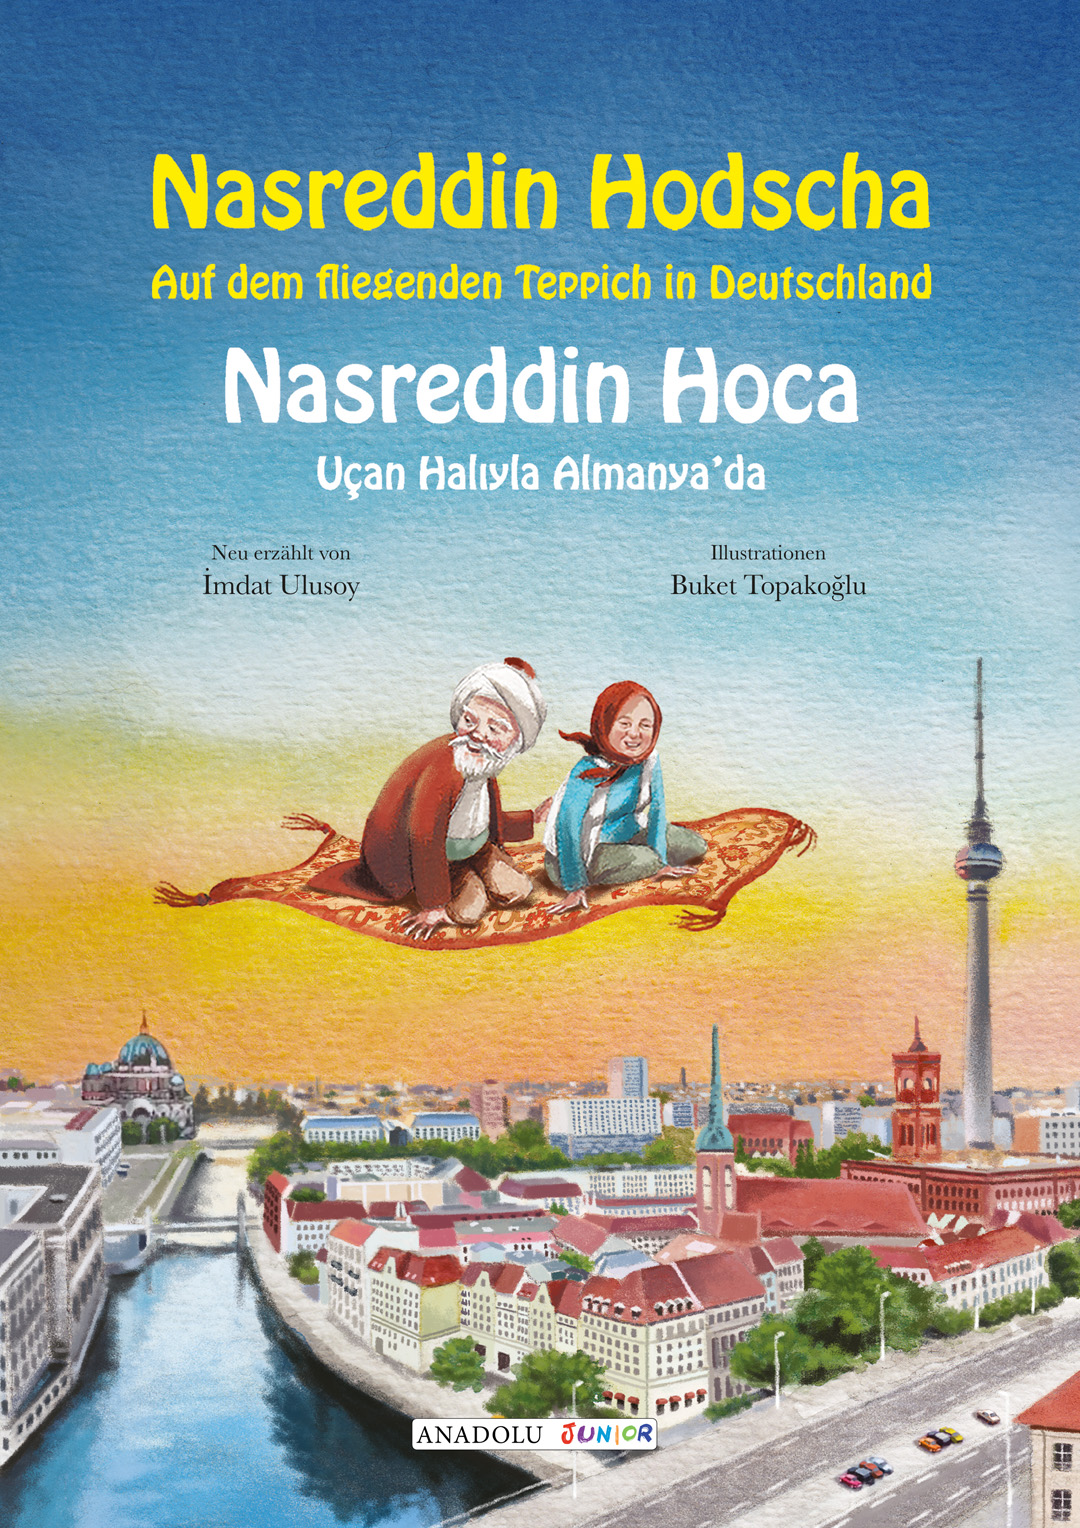 Nasreddin Hodscha - Auf dem fliegenden Teppich in Deutschland